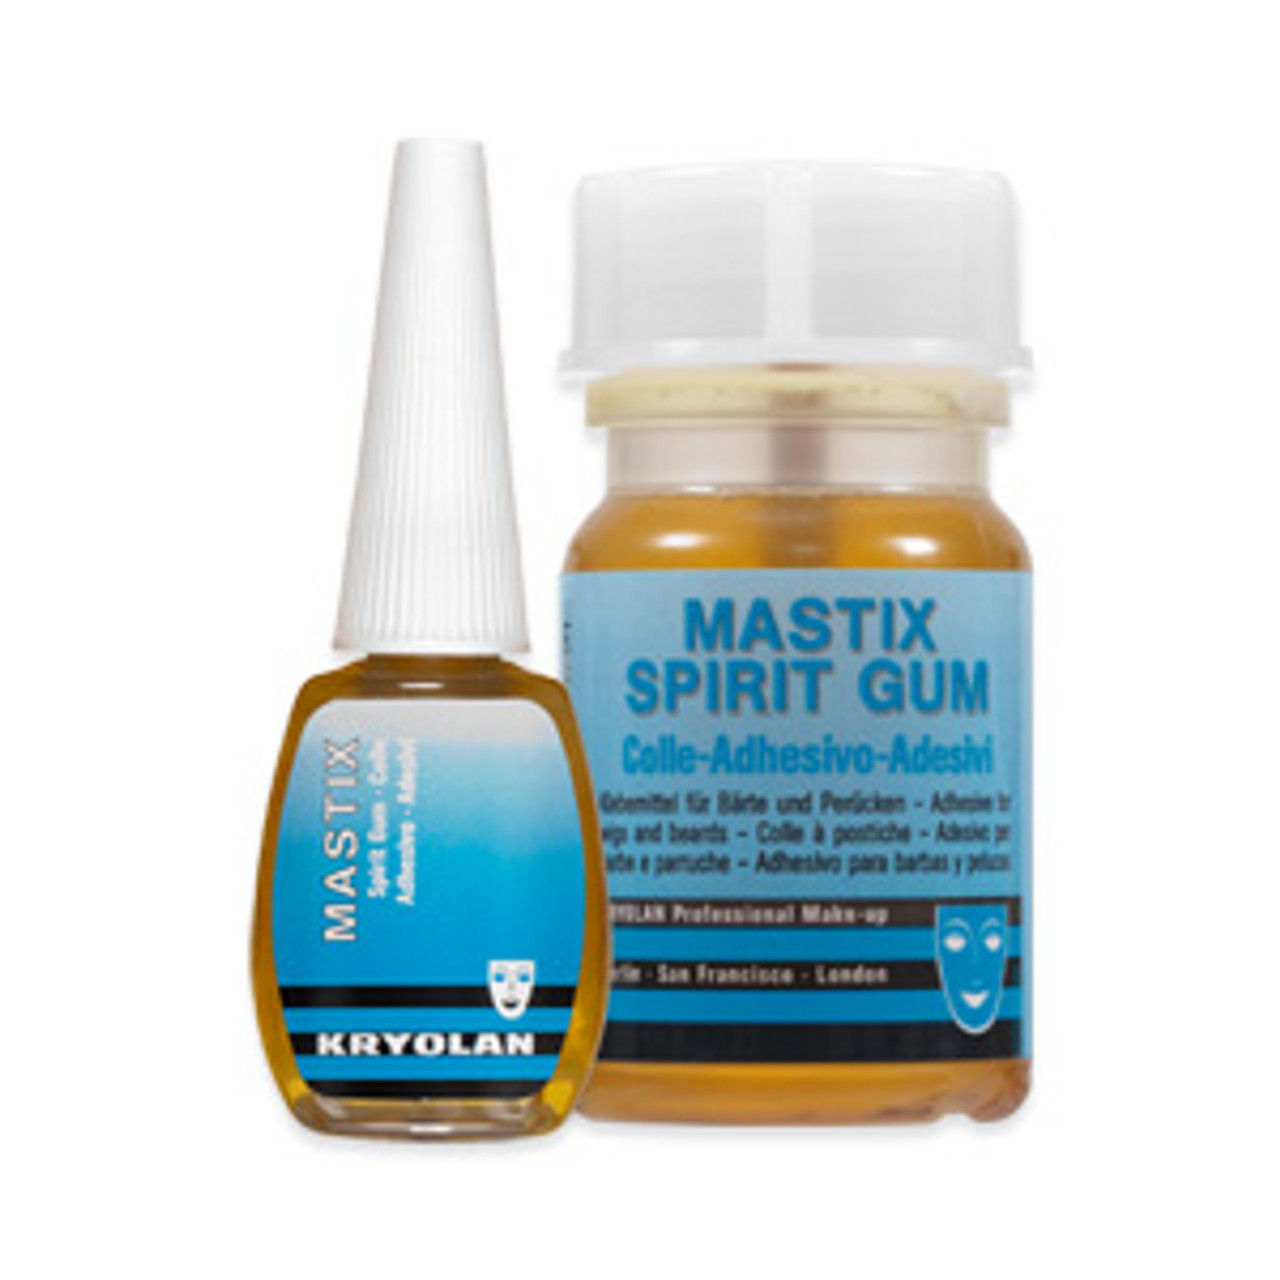 Kryolan Mastix Spirit Gum 50ml (02002)